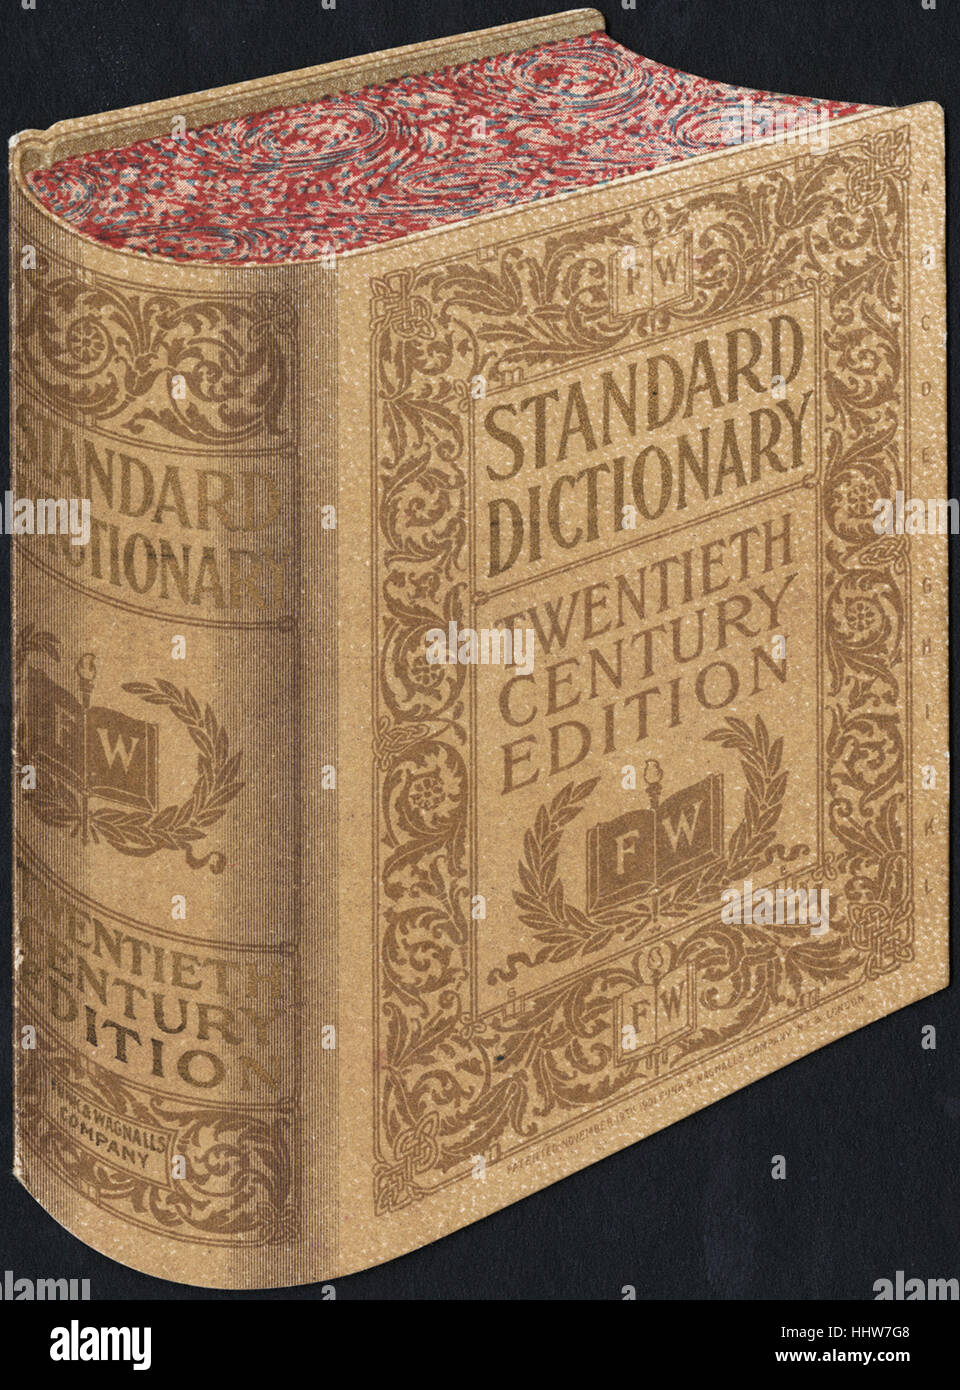 Dictionnaire Standard, édition du 20e siècle. [Avant] - loisirs, la lecture et les voyages les cartes commerciales Banque D'Images